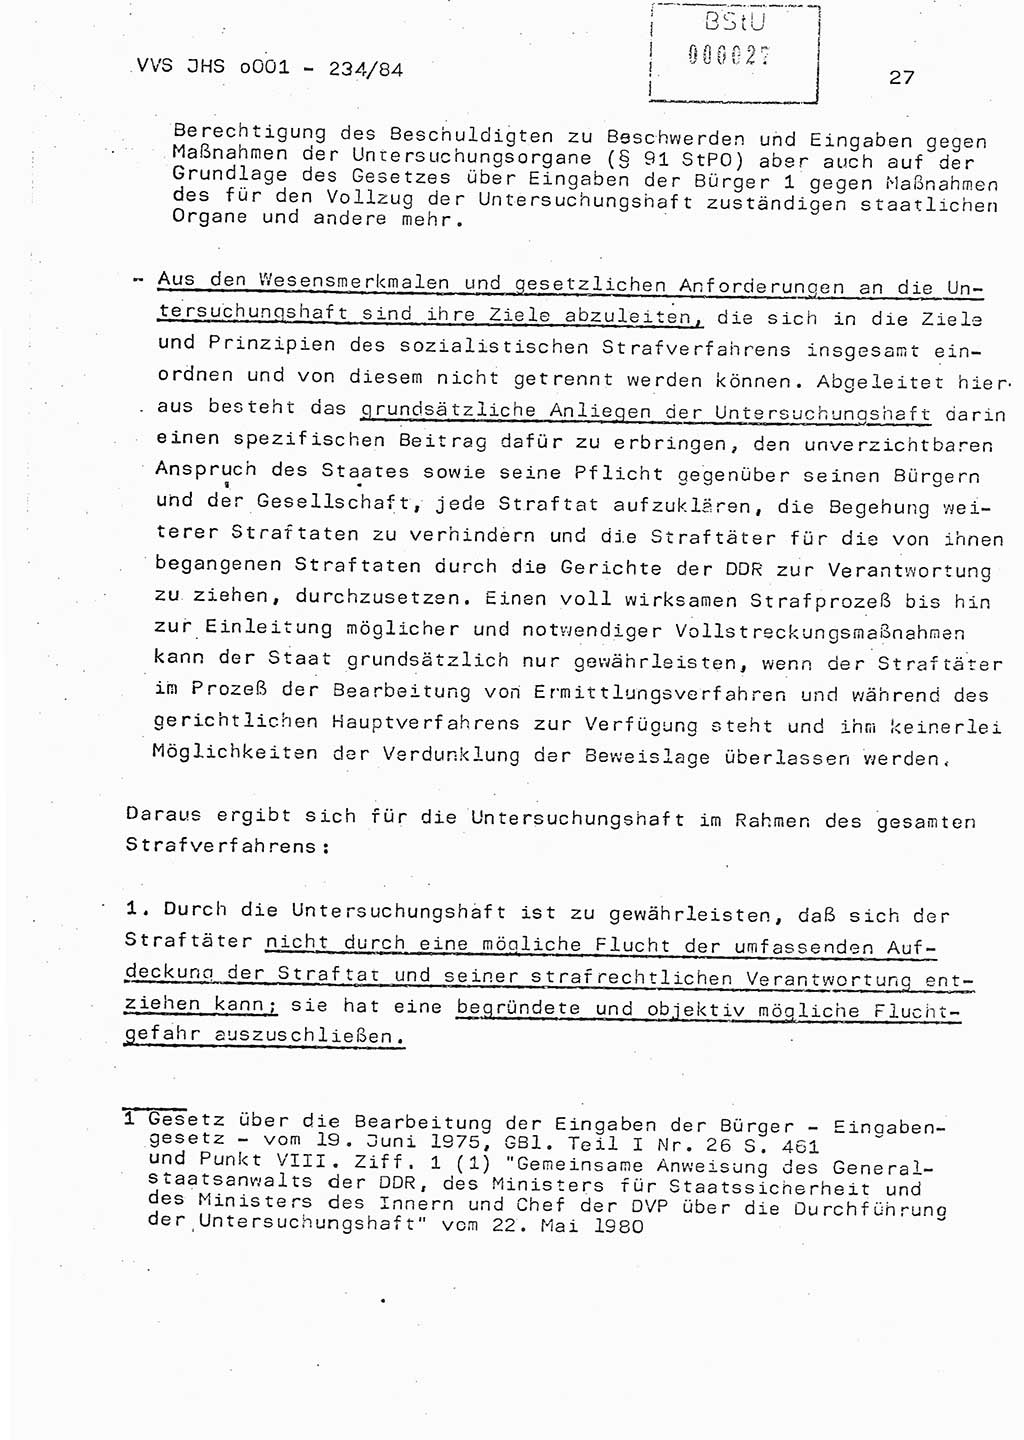 Dissertation Oberst Siegfried Rataizick (Abt. ⅩⅣ), Oberstleutnant Volkmar Heinz (Abt. ⅩⅣ), Oberstleutnant Werner Stein (HA Ⅸ), Hauptmann Heinz Conrad (JHS), Ministerium für Staatssicherheit (MfS) [Deutsche Demokratische Republik (DDR)], Juristische Hochschule (JHS), Vertrauliche Verschlußsache (VVS) o001-234/84, Potsdam 1984, Seite 27 (Diss. MfS DDR JHS VVS o001-234/84 1984, S. 27)